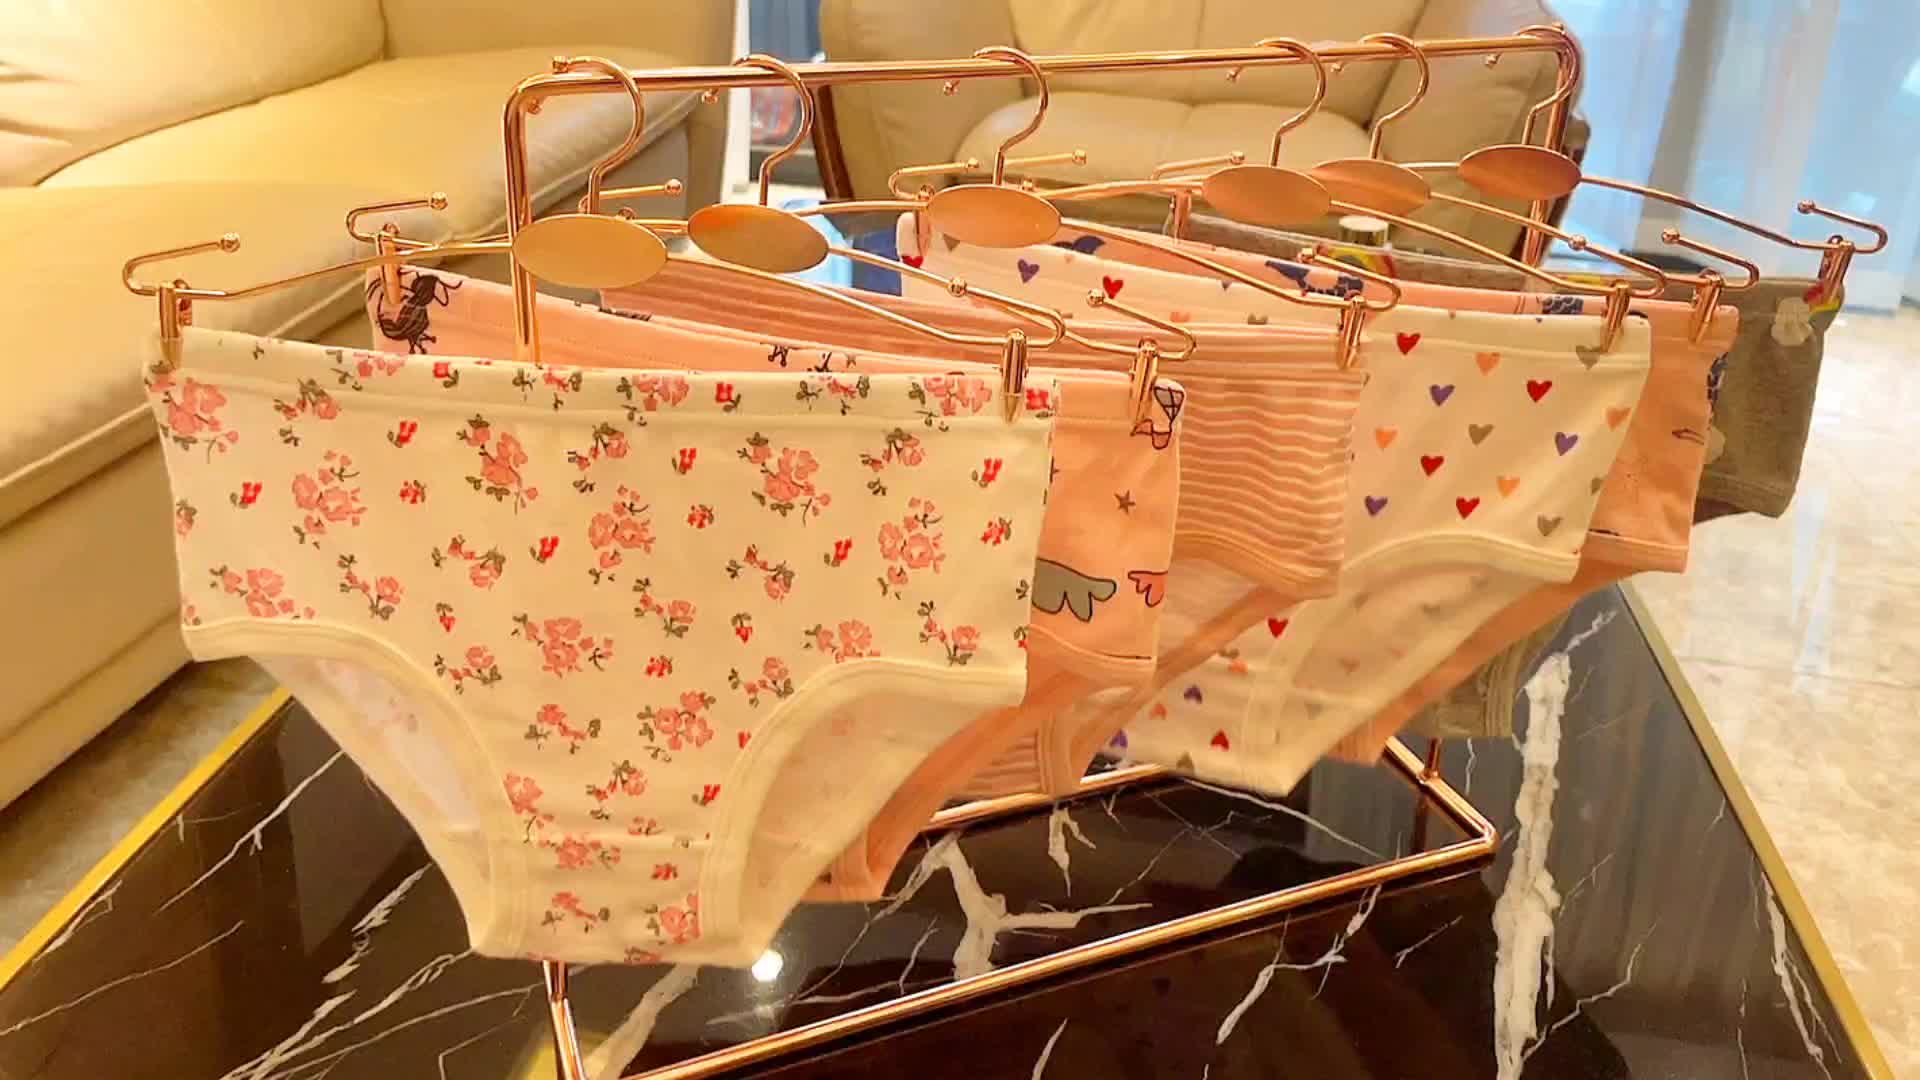 Girl's Comfy Briefs Beautiful Girl Print Cotton Panties - Temu